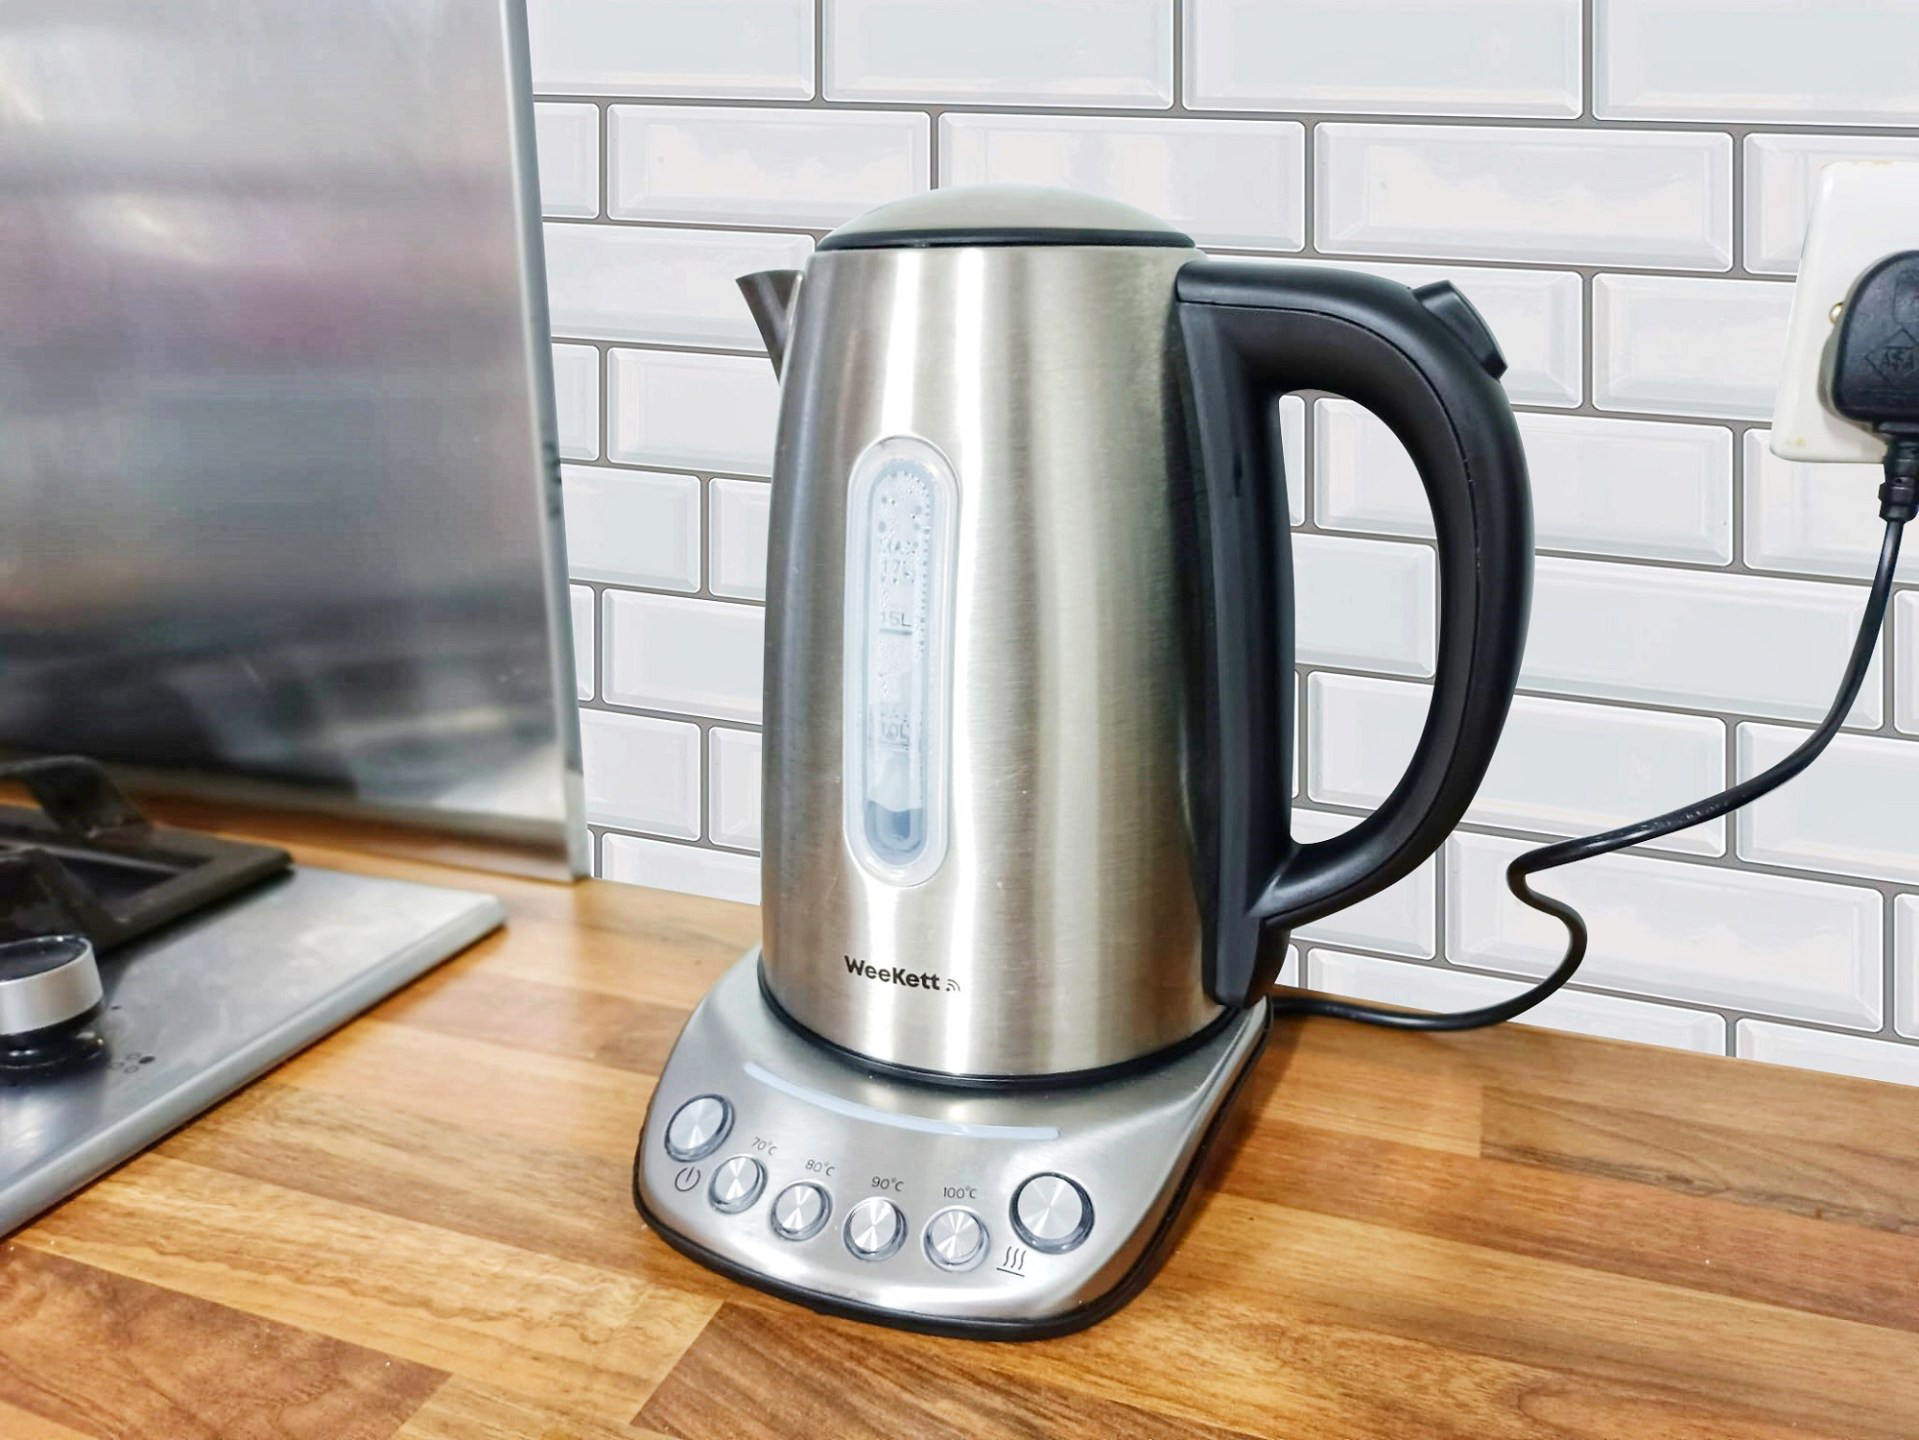 weekett smart kettle in kitchen